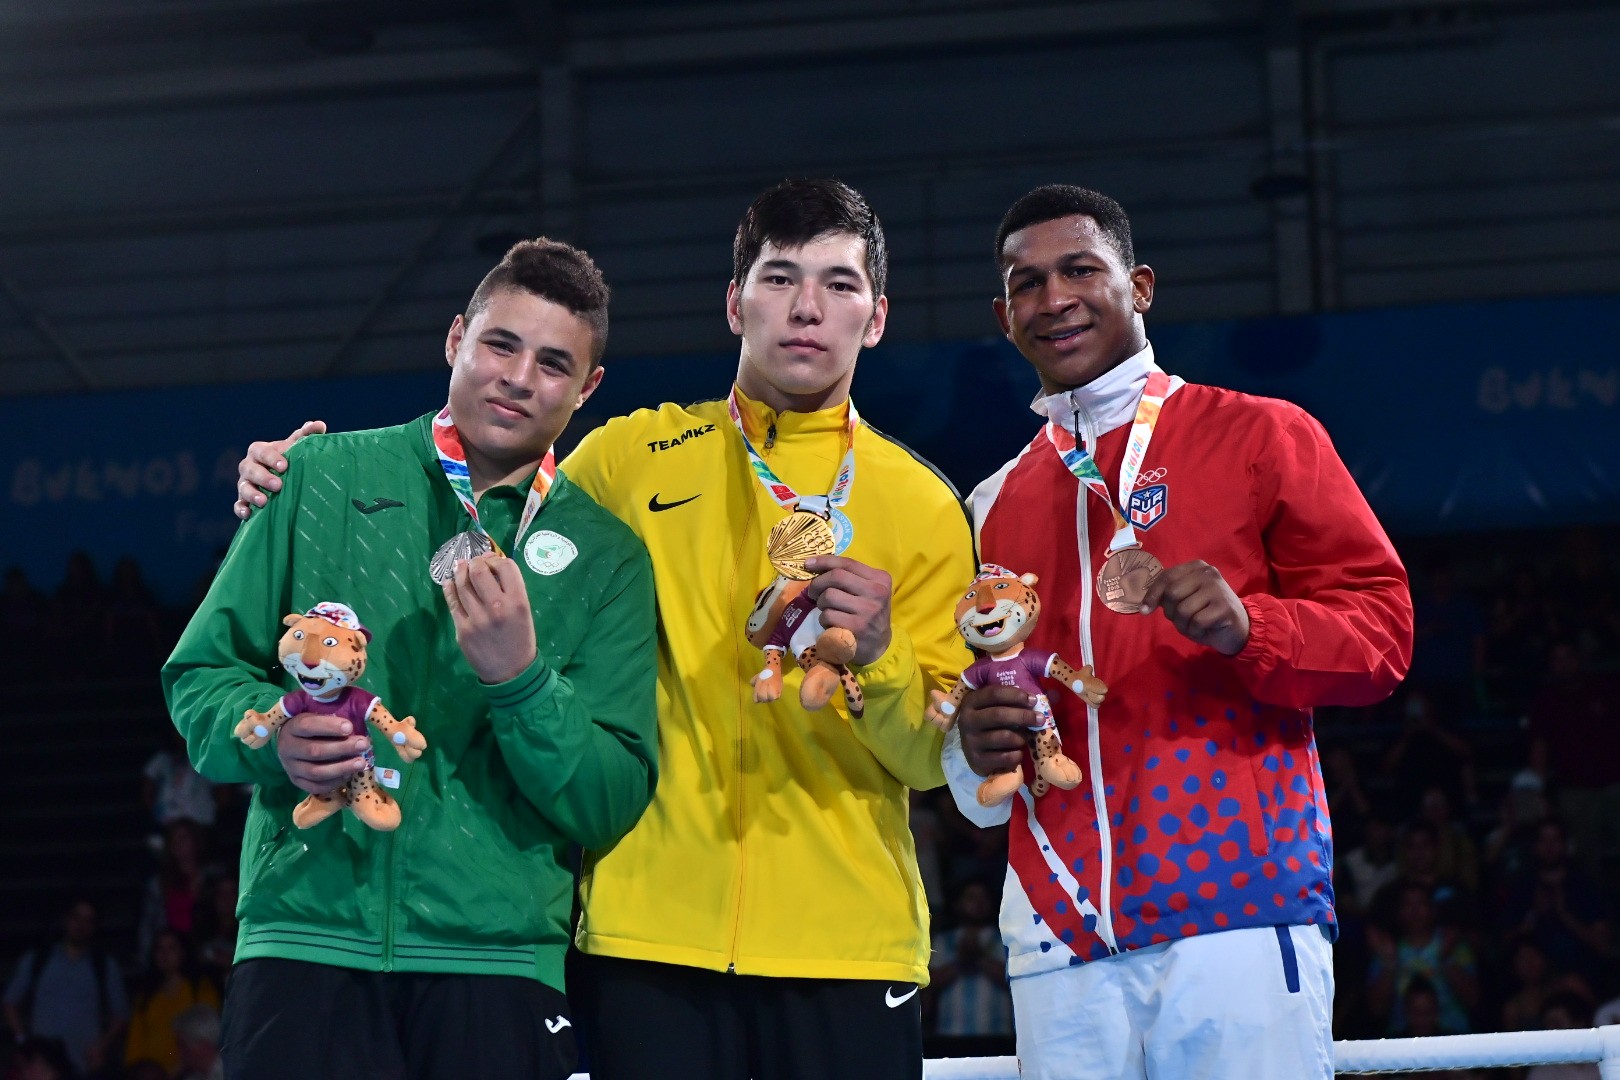 Буэнос-Айрес-2018: казахстанец завоевал золотую медаль в боксе 